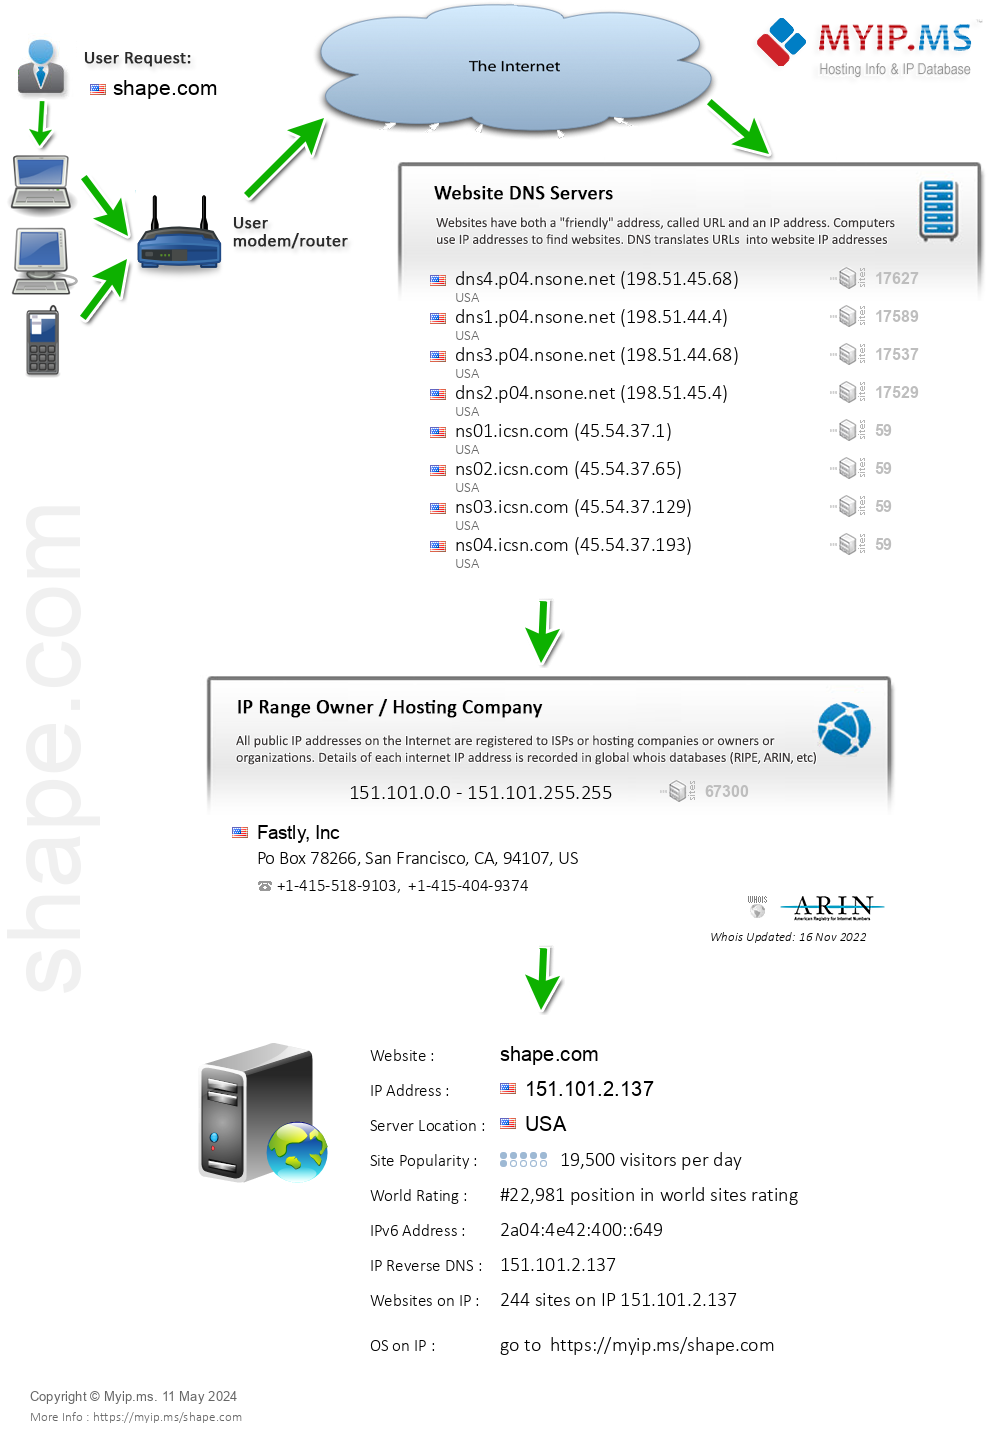 Shape.com - Website Hosting Visual IP Diagram